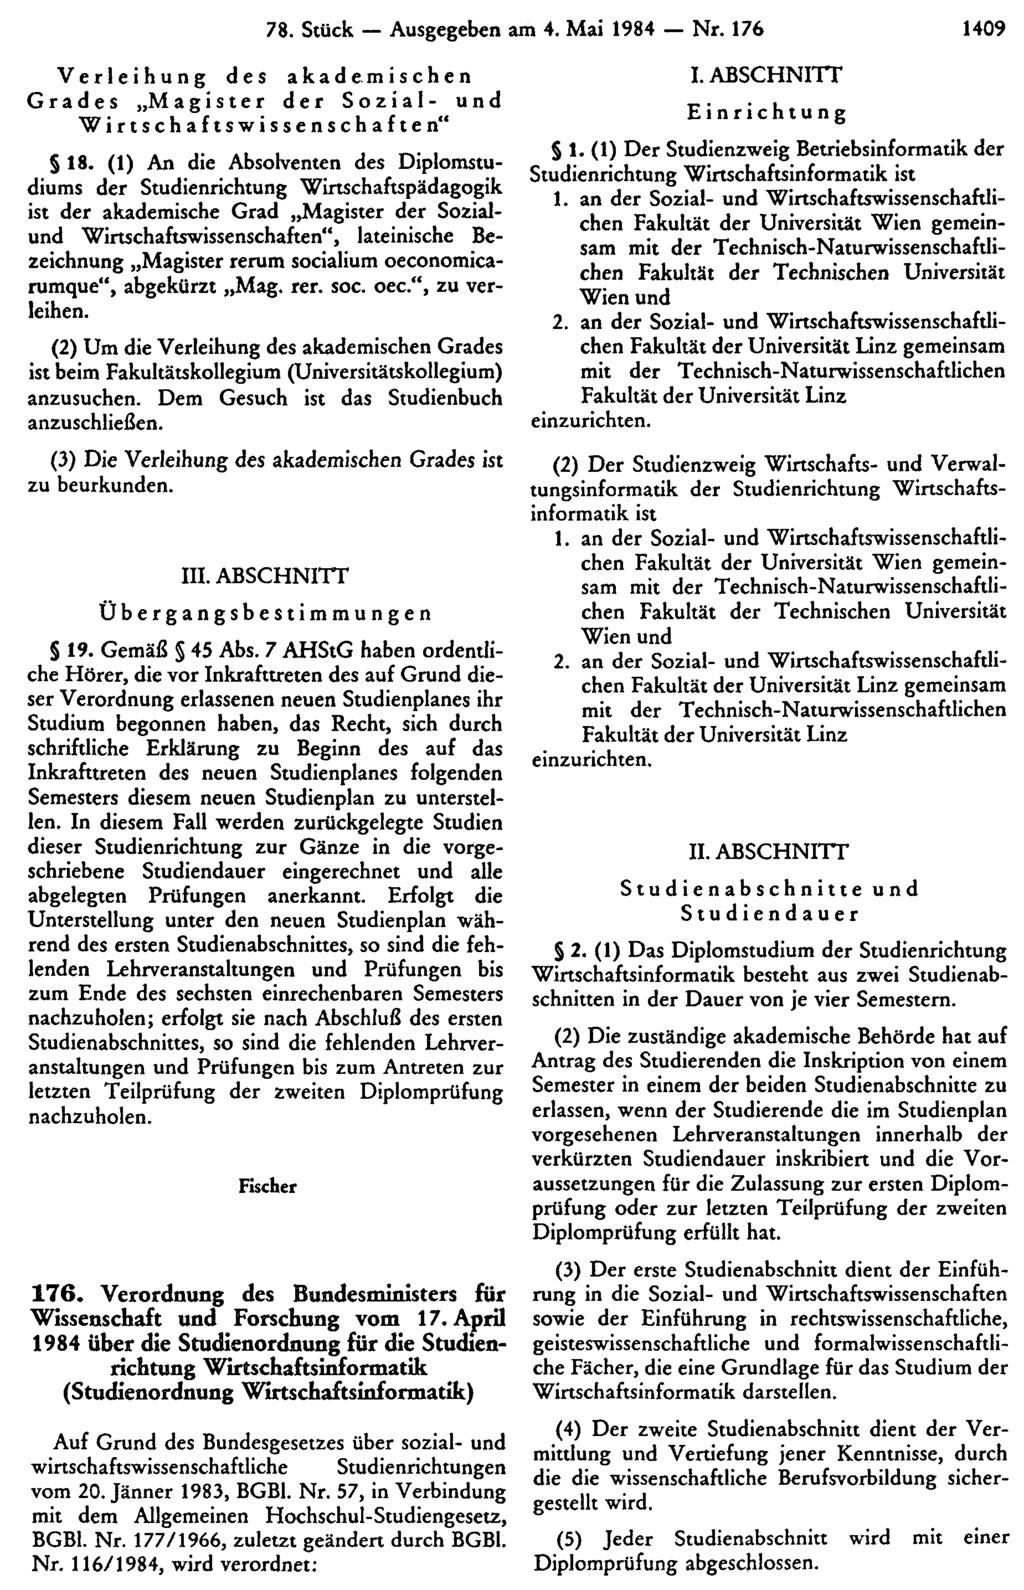 Verleihung des akademischen Grades Magister der Sozial- und Wirtschaftswissenschaften" 78. Stück Ausgegeben am 4. Mai 1984 Nr. 176 1409 18.